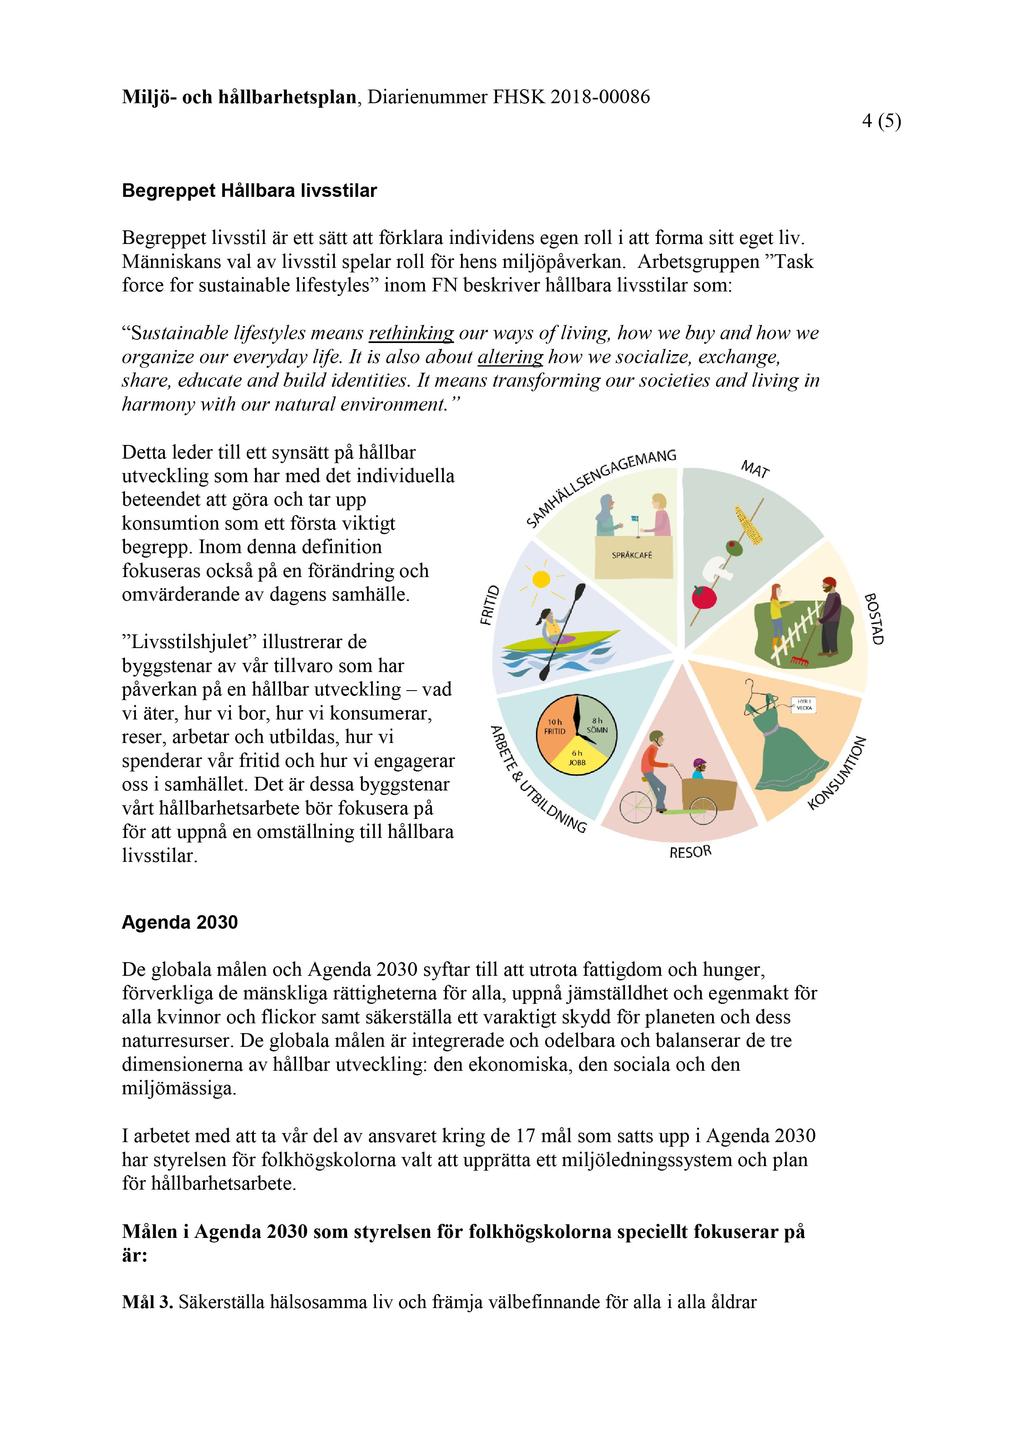 15 Miljö- och hållbarhetsplan för folkhögskoleförvaltningen - FHSK 2018-00086-3 Miljö- och hållbarhetsplan för folkhögskoleförvaltningen : Miljö- och hållbarhetsplan för folkhögskoleförvaltningen